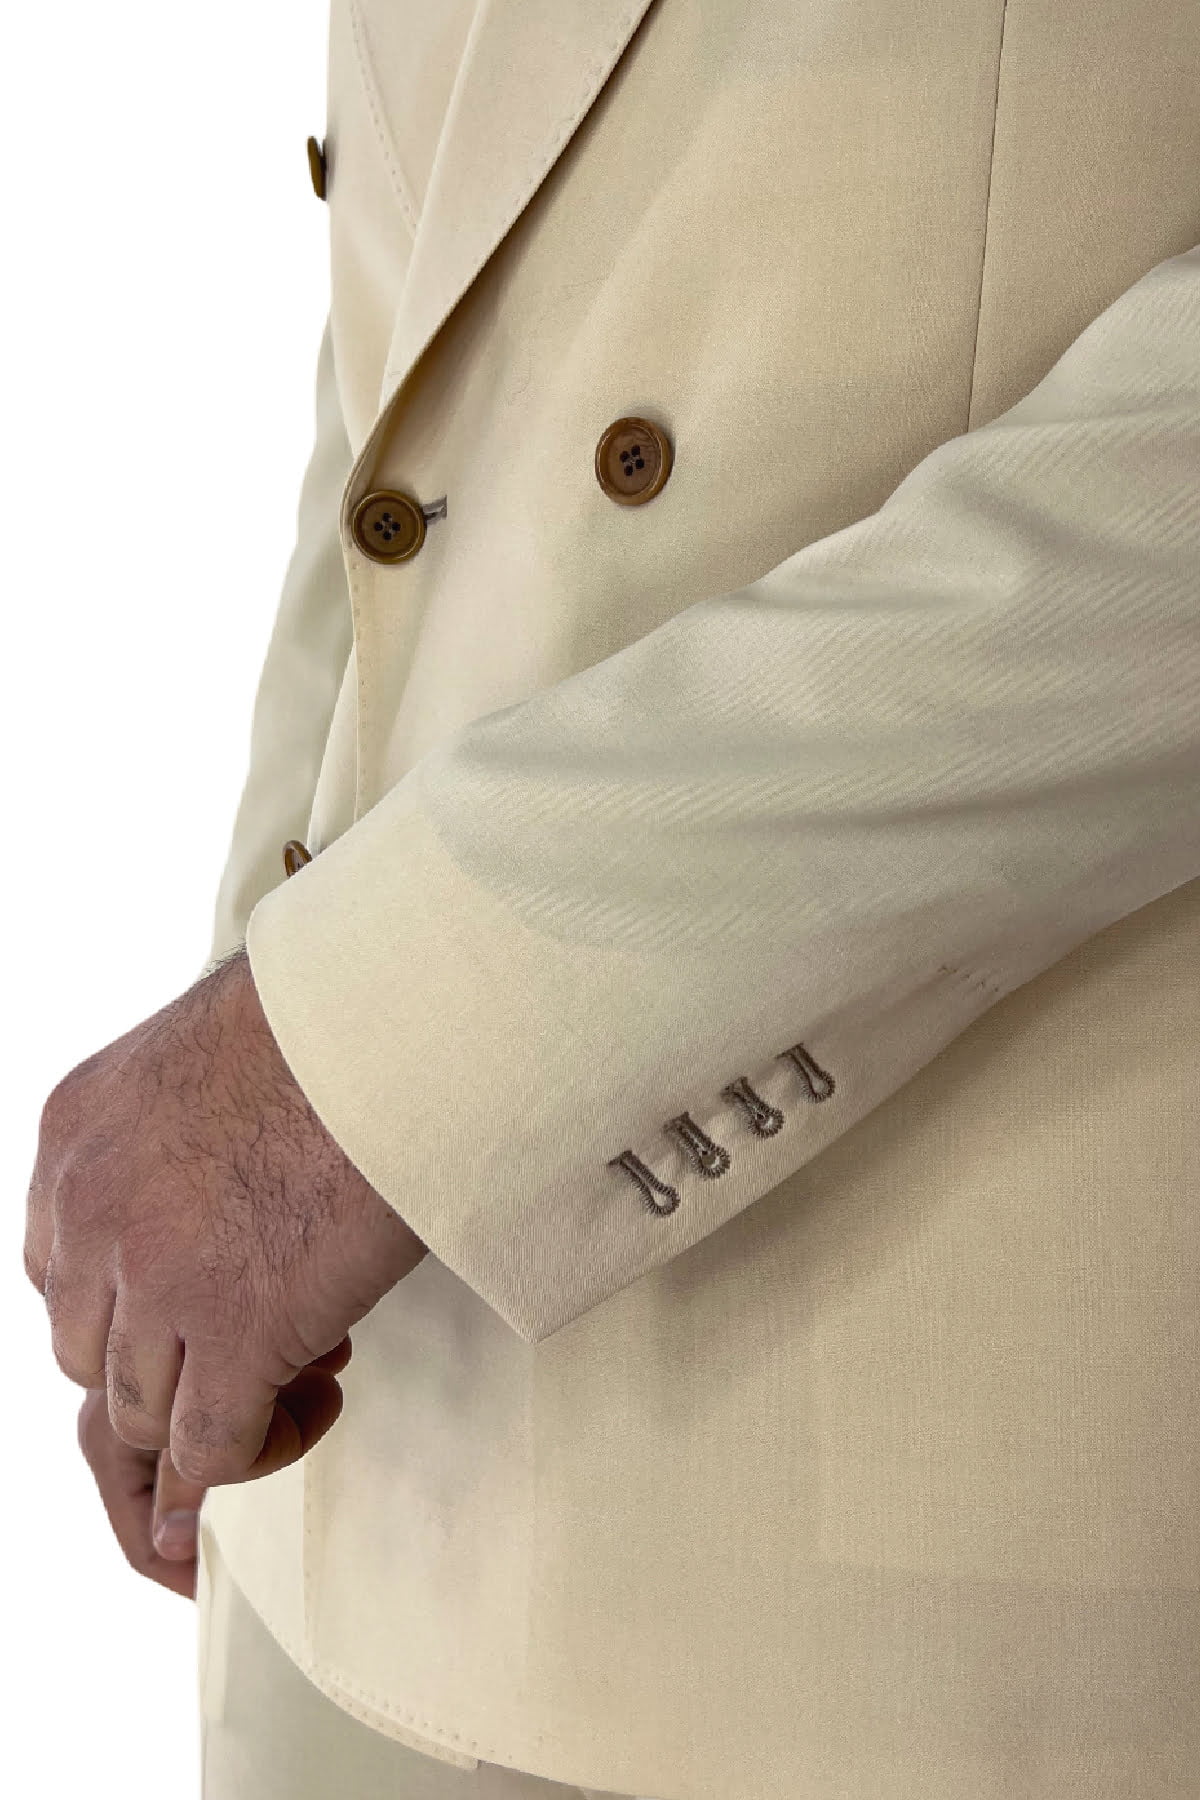 Giacca uomo doppiopetto beige chiaro in fresco lana 100's Holland & Sherry